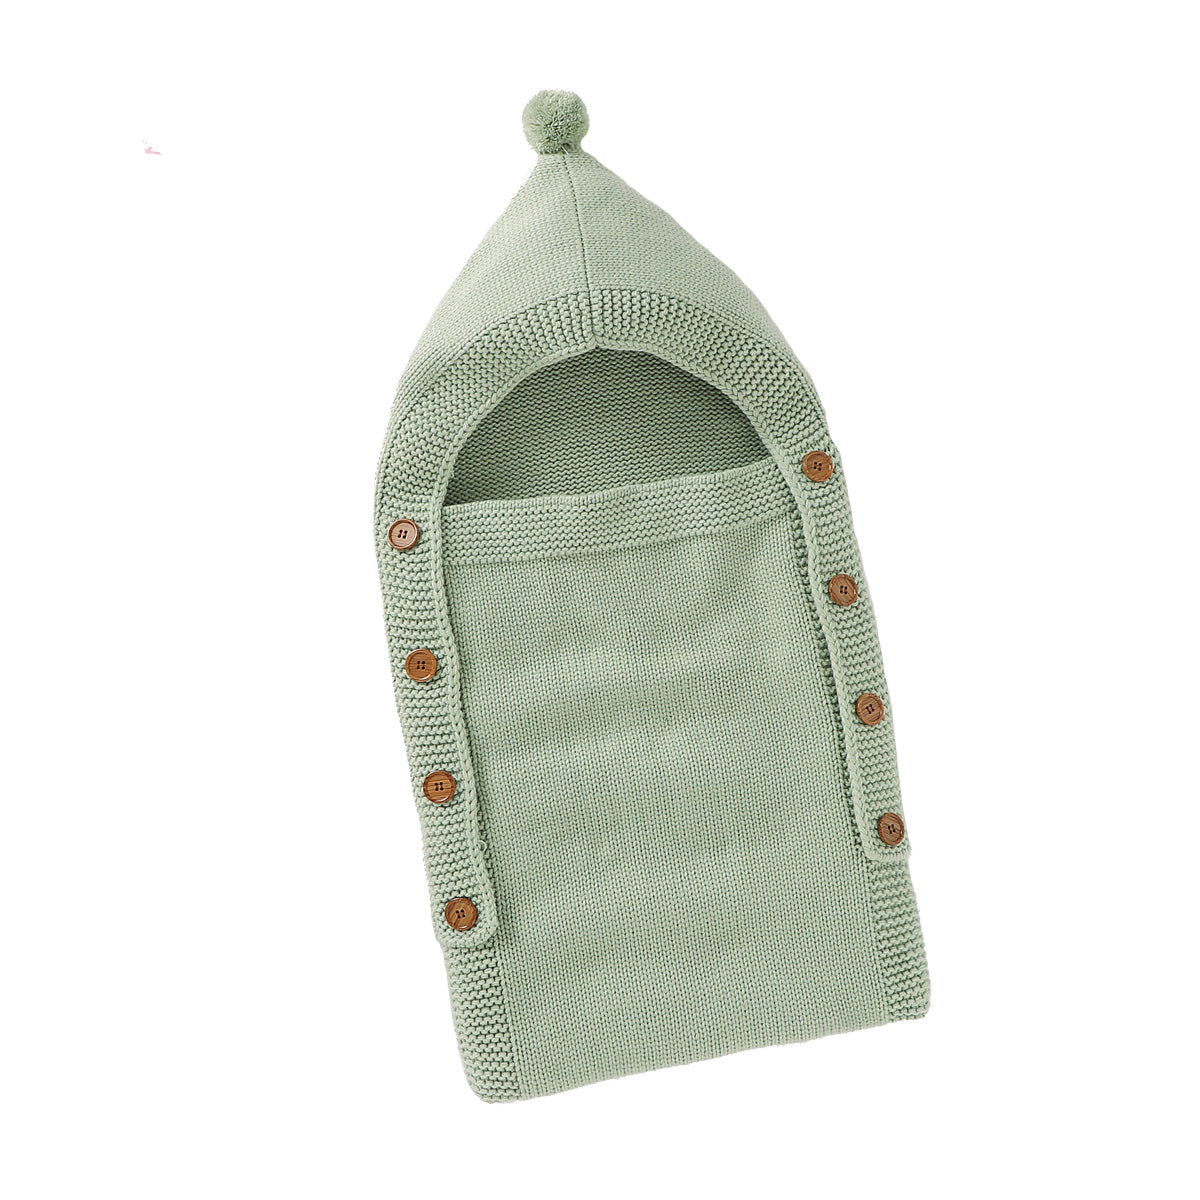 Knit Baby Sleeping Bag with Hat Green | MamasHero KSA